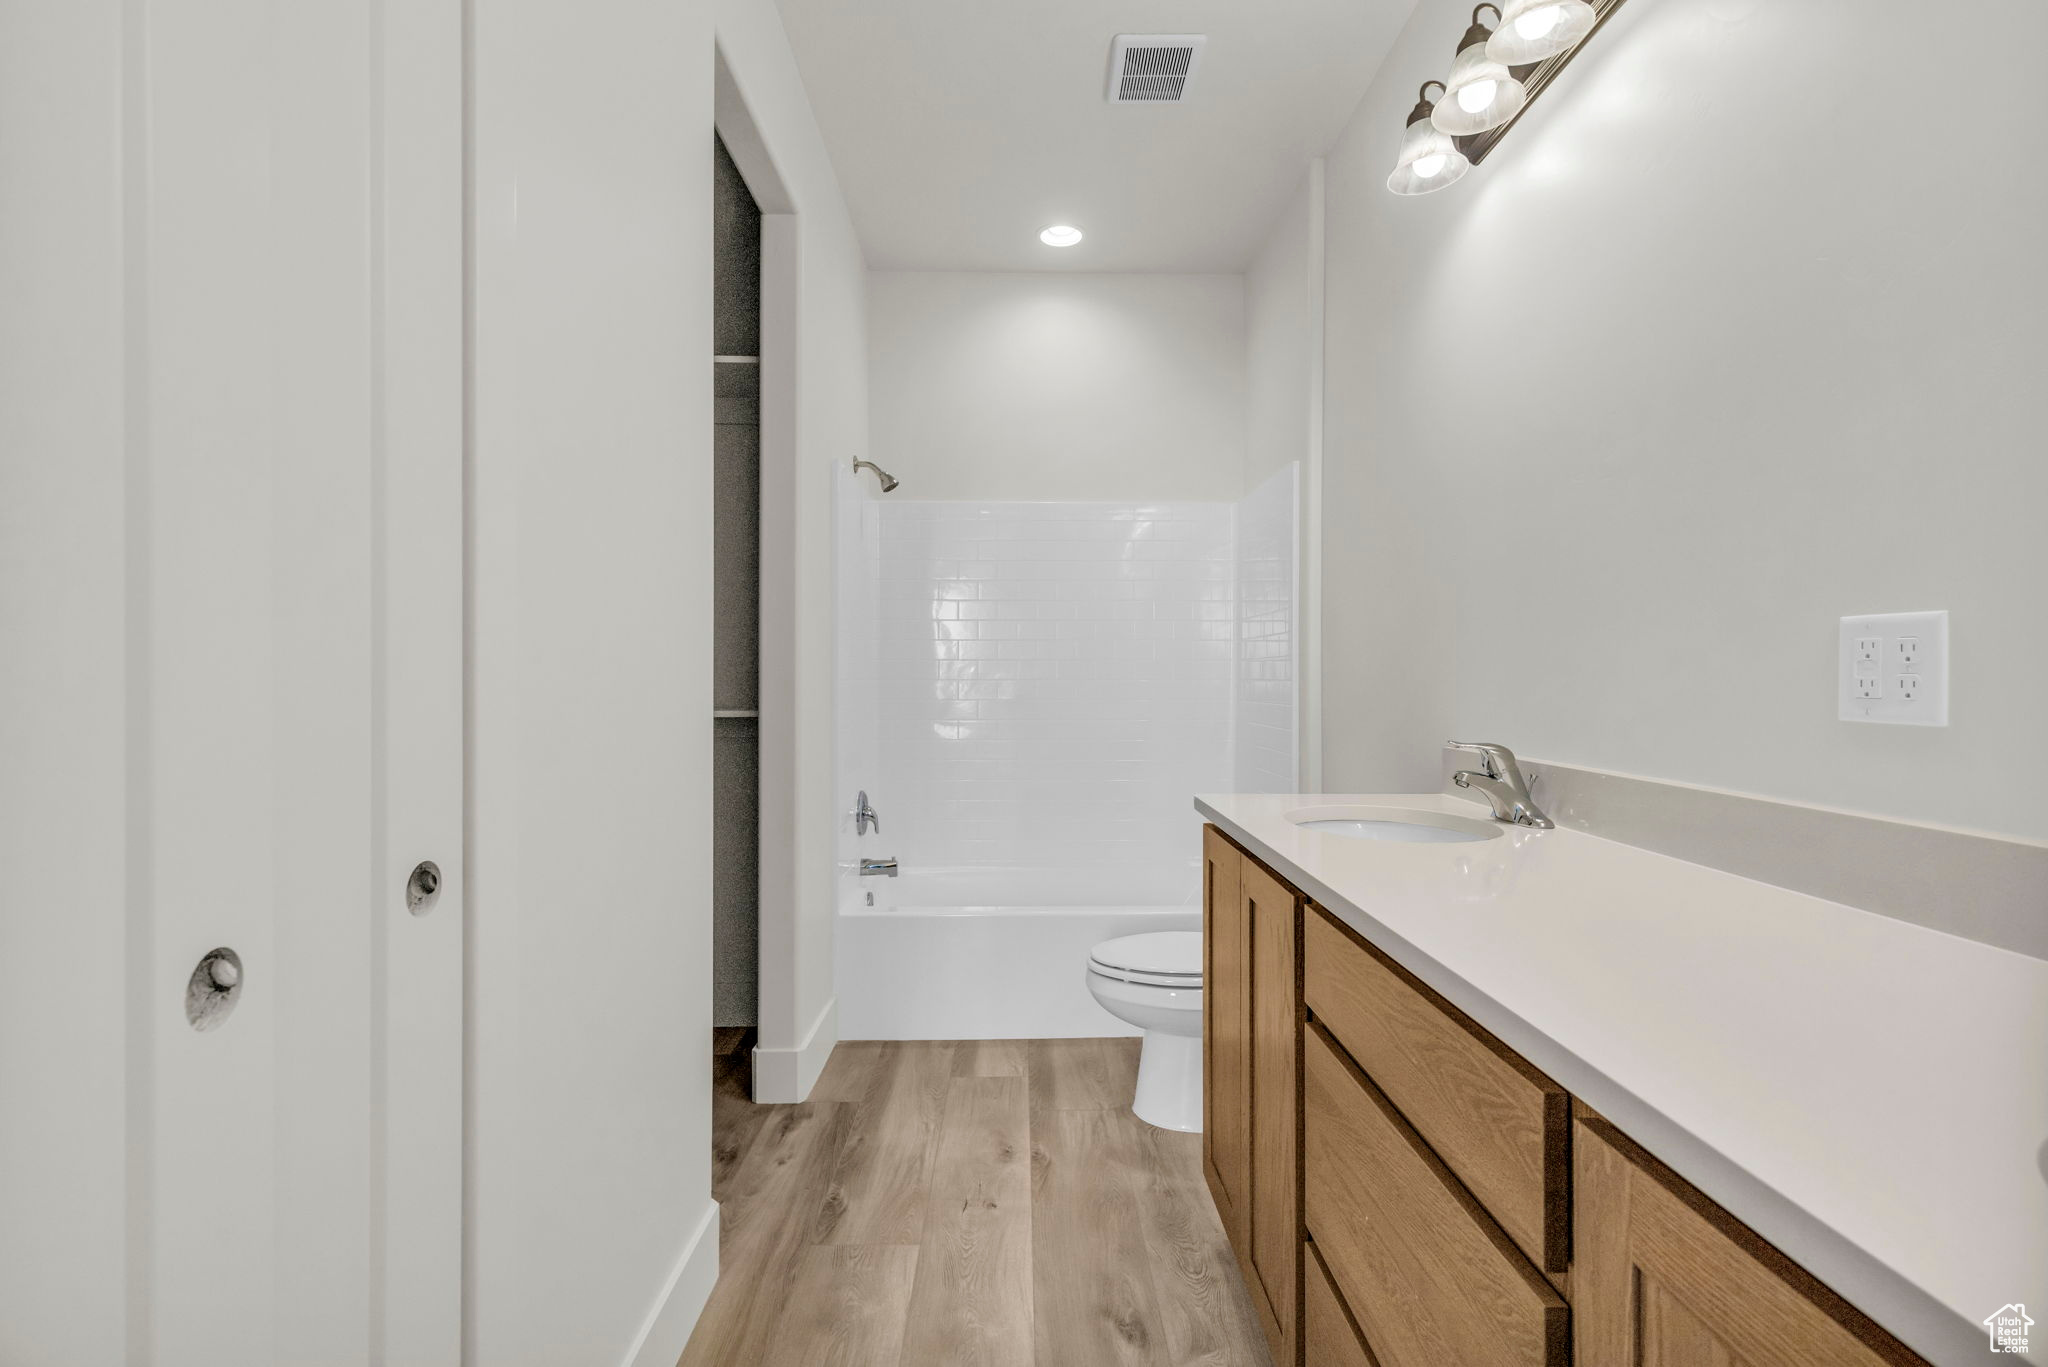 Full bathroom featuring hardwood / wood-style floors, shower / bathtub combination, vanity, and toilet